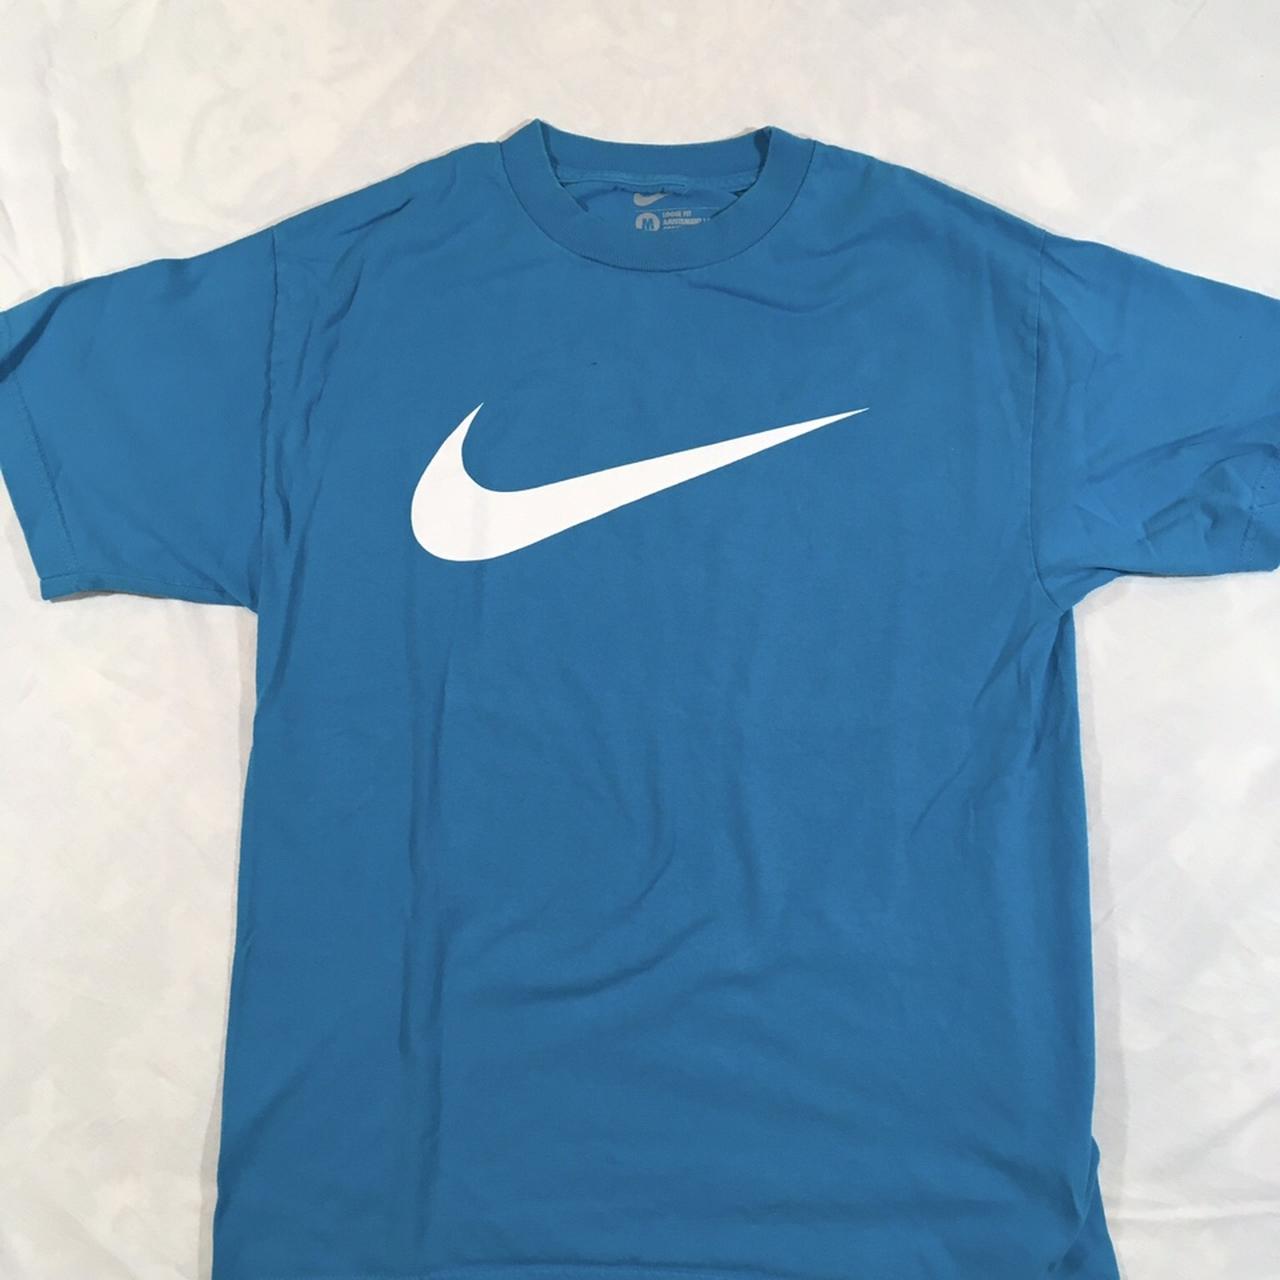 Vintage Nike Swoosh Logo Sz M Tshirt! Brand: Nike... - Depop